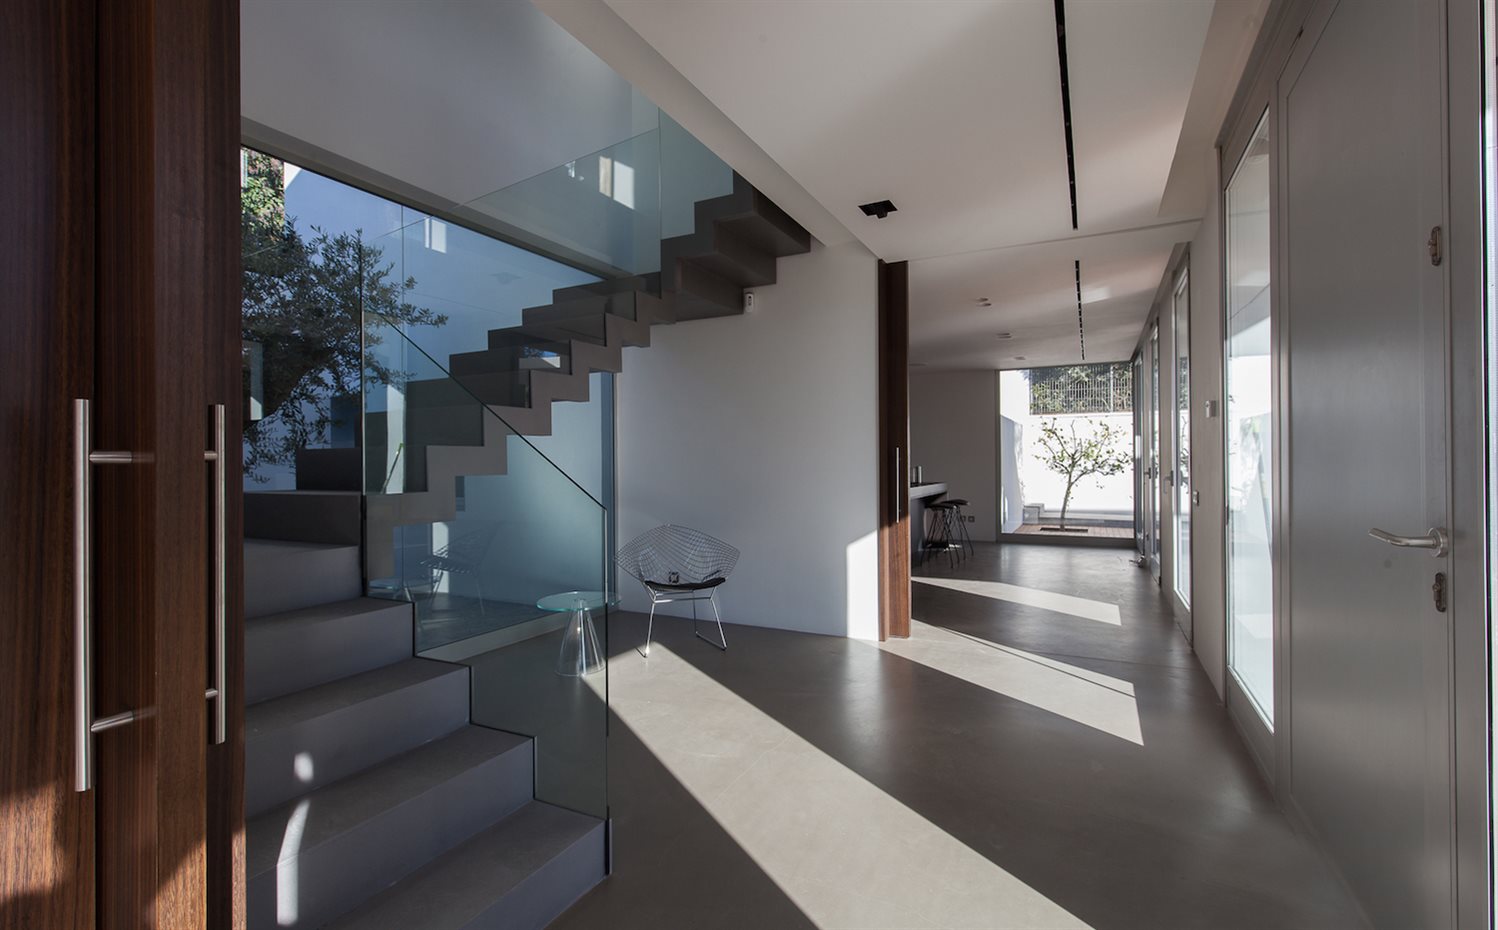 IMG 8955. El vestíbulo separa la cocina del salón-comedor e integra las escaleras de la vivienda